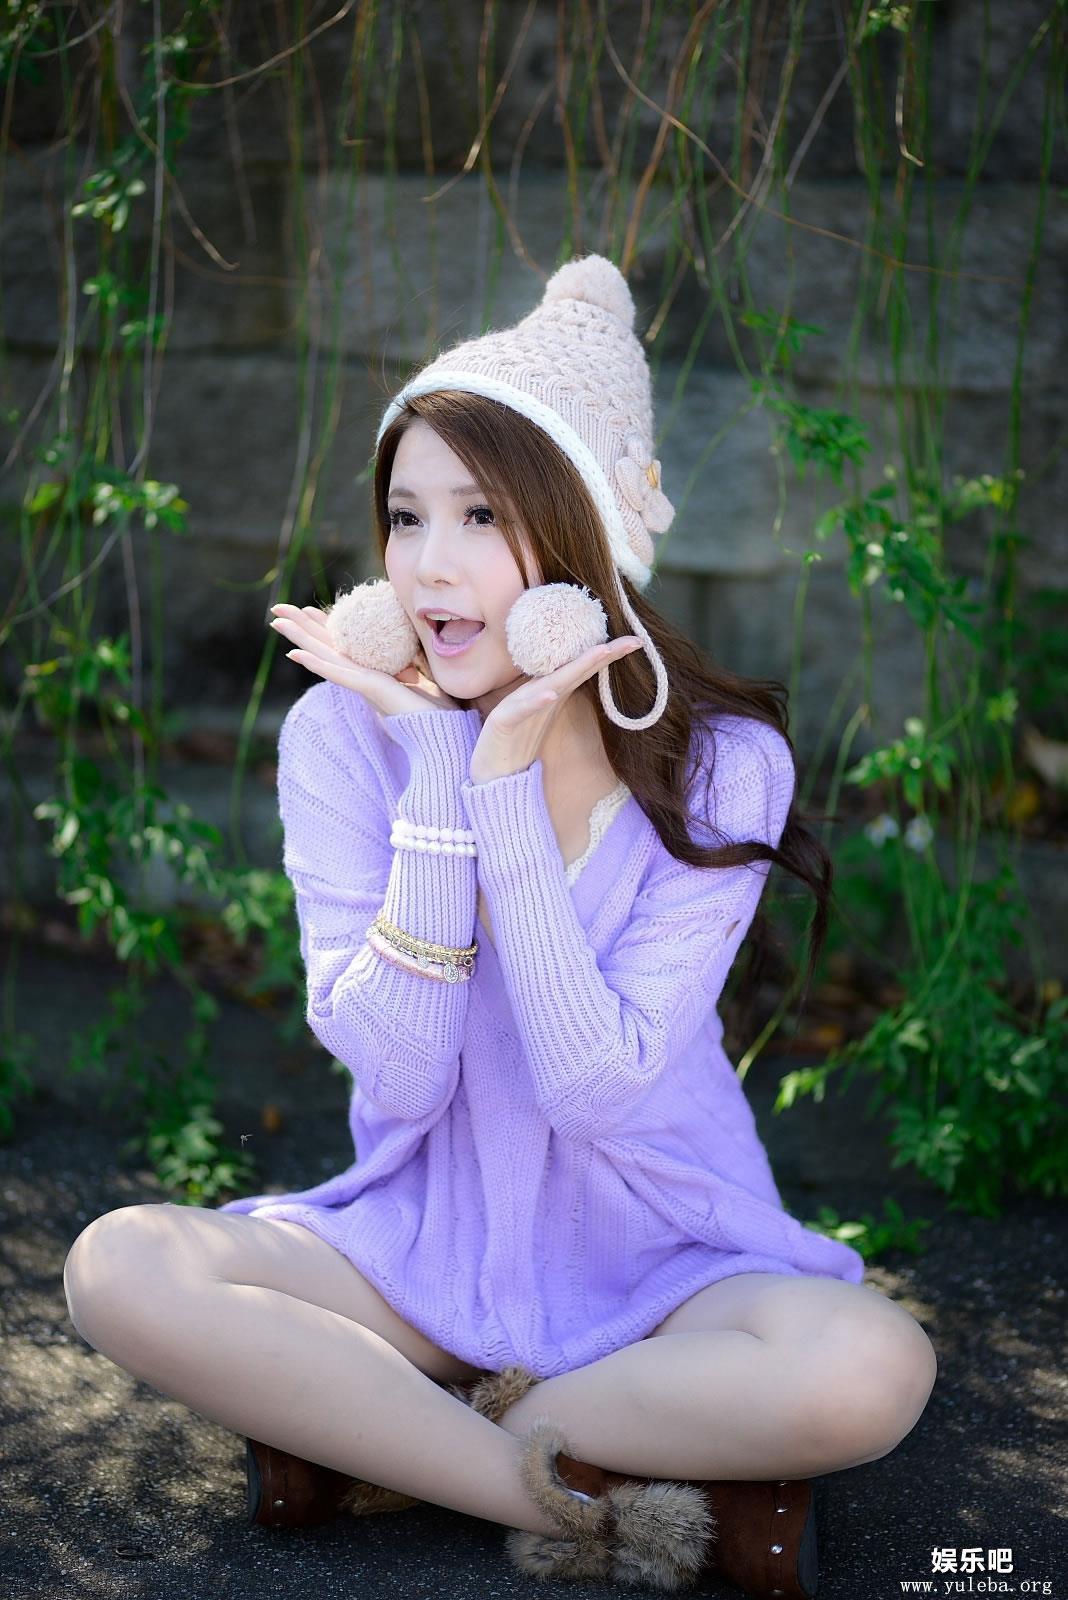 紫色毛衣可人的美胸少女许睿瑜高清外拍,紫色毛衣可人的美胸少女许睿瑜高清外拍